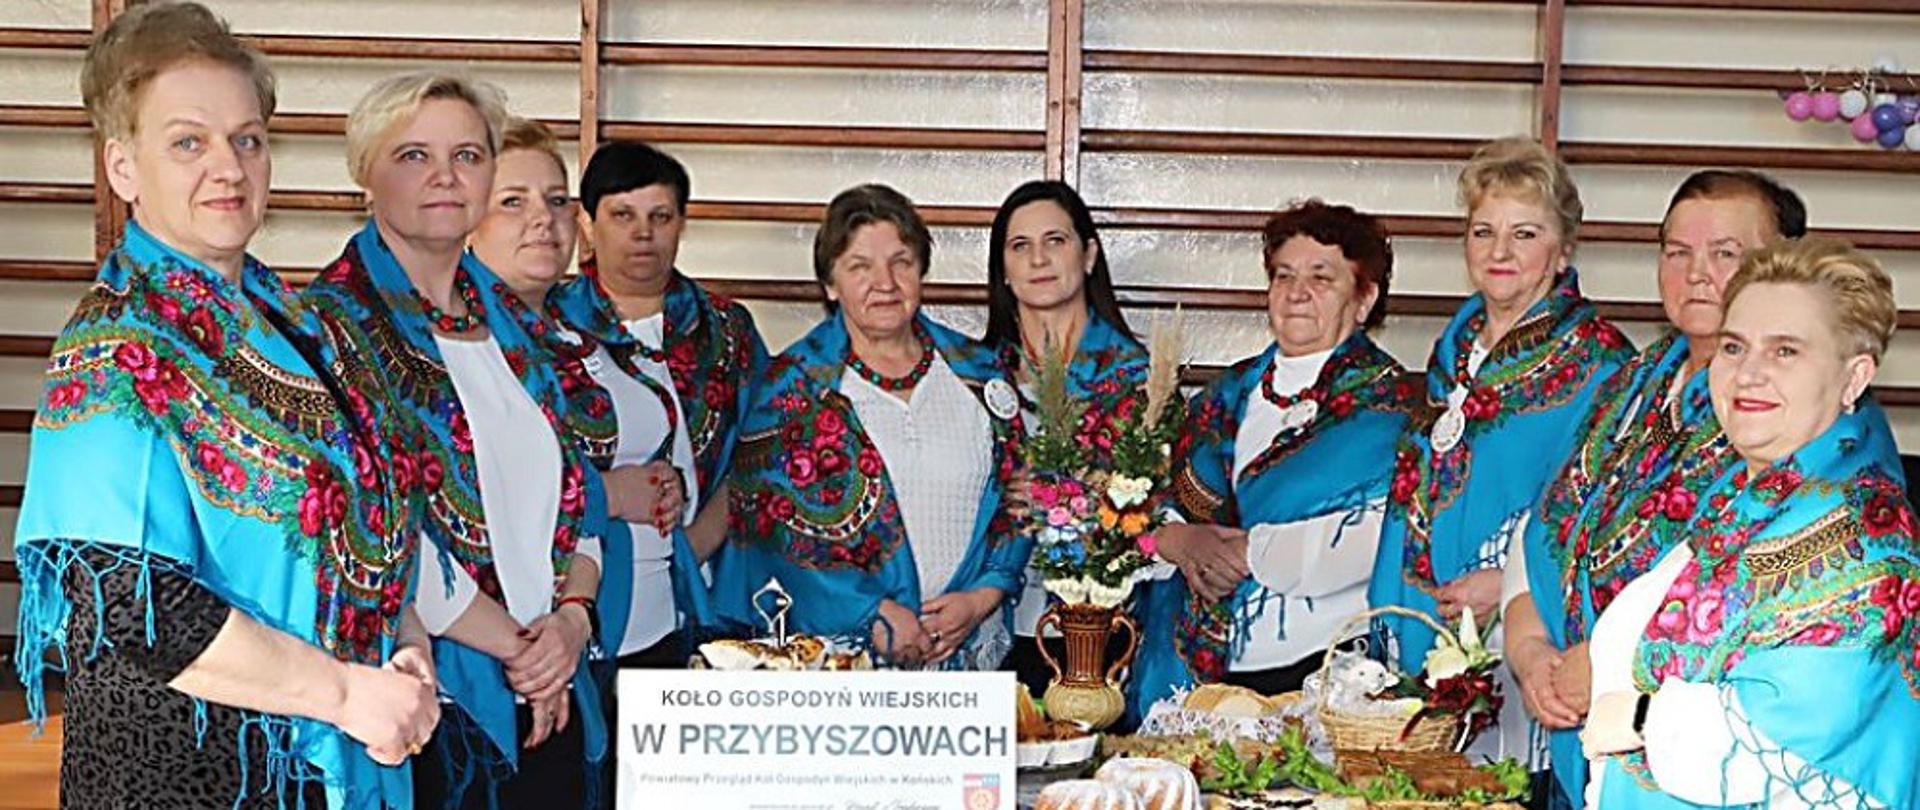 KGW w Przybyszowach